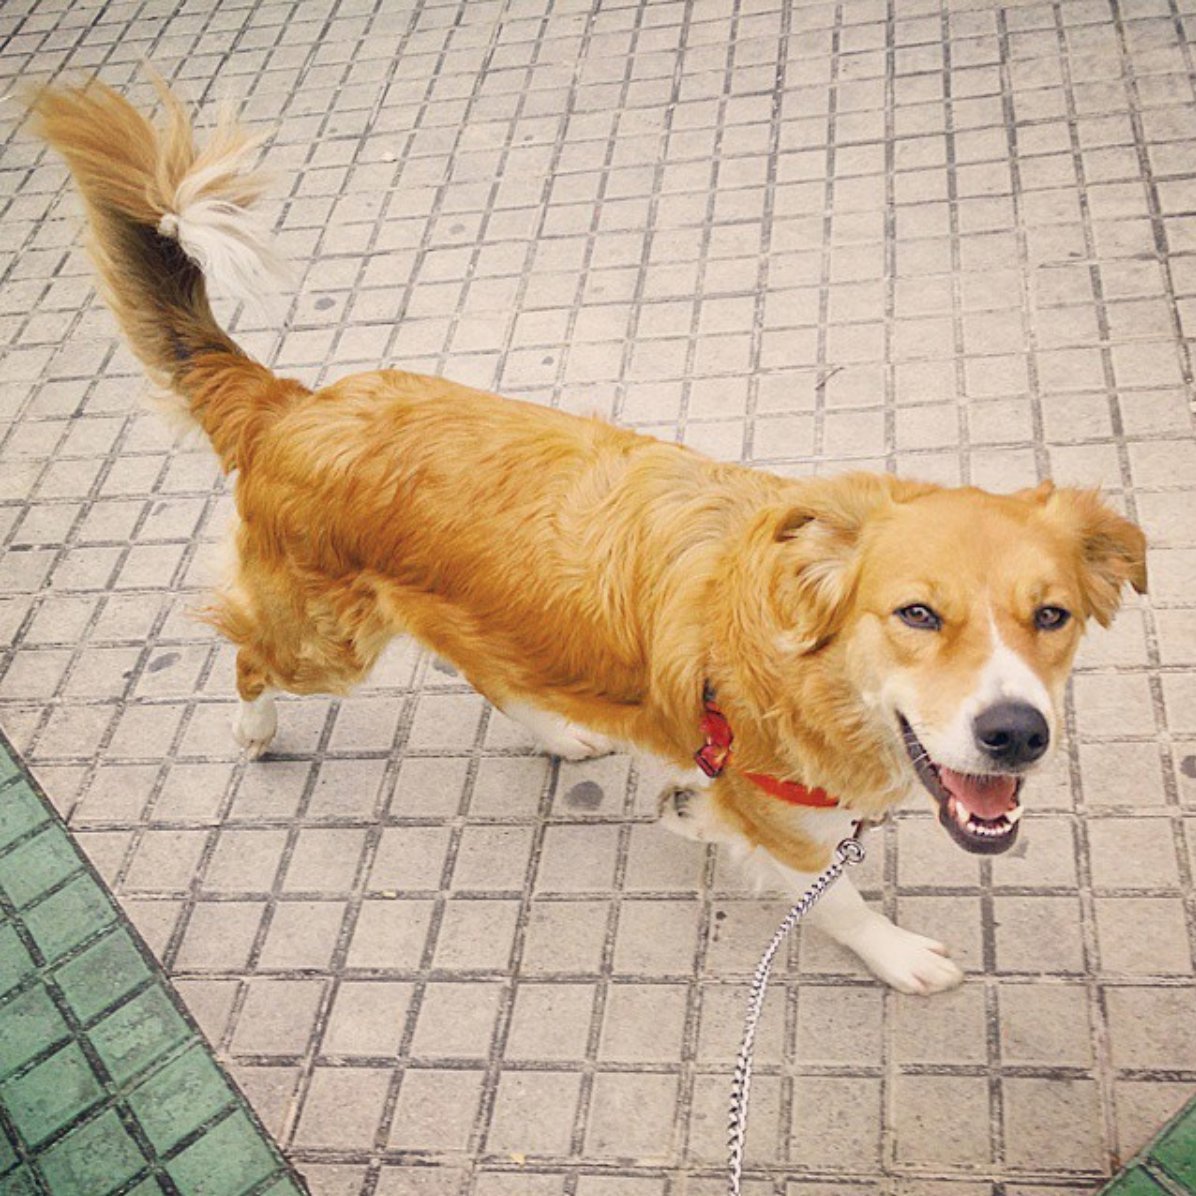 Maya, a cadela que morreu envenenada num jardim público, e emocionou os espanhóis